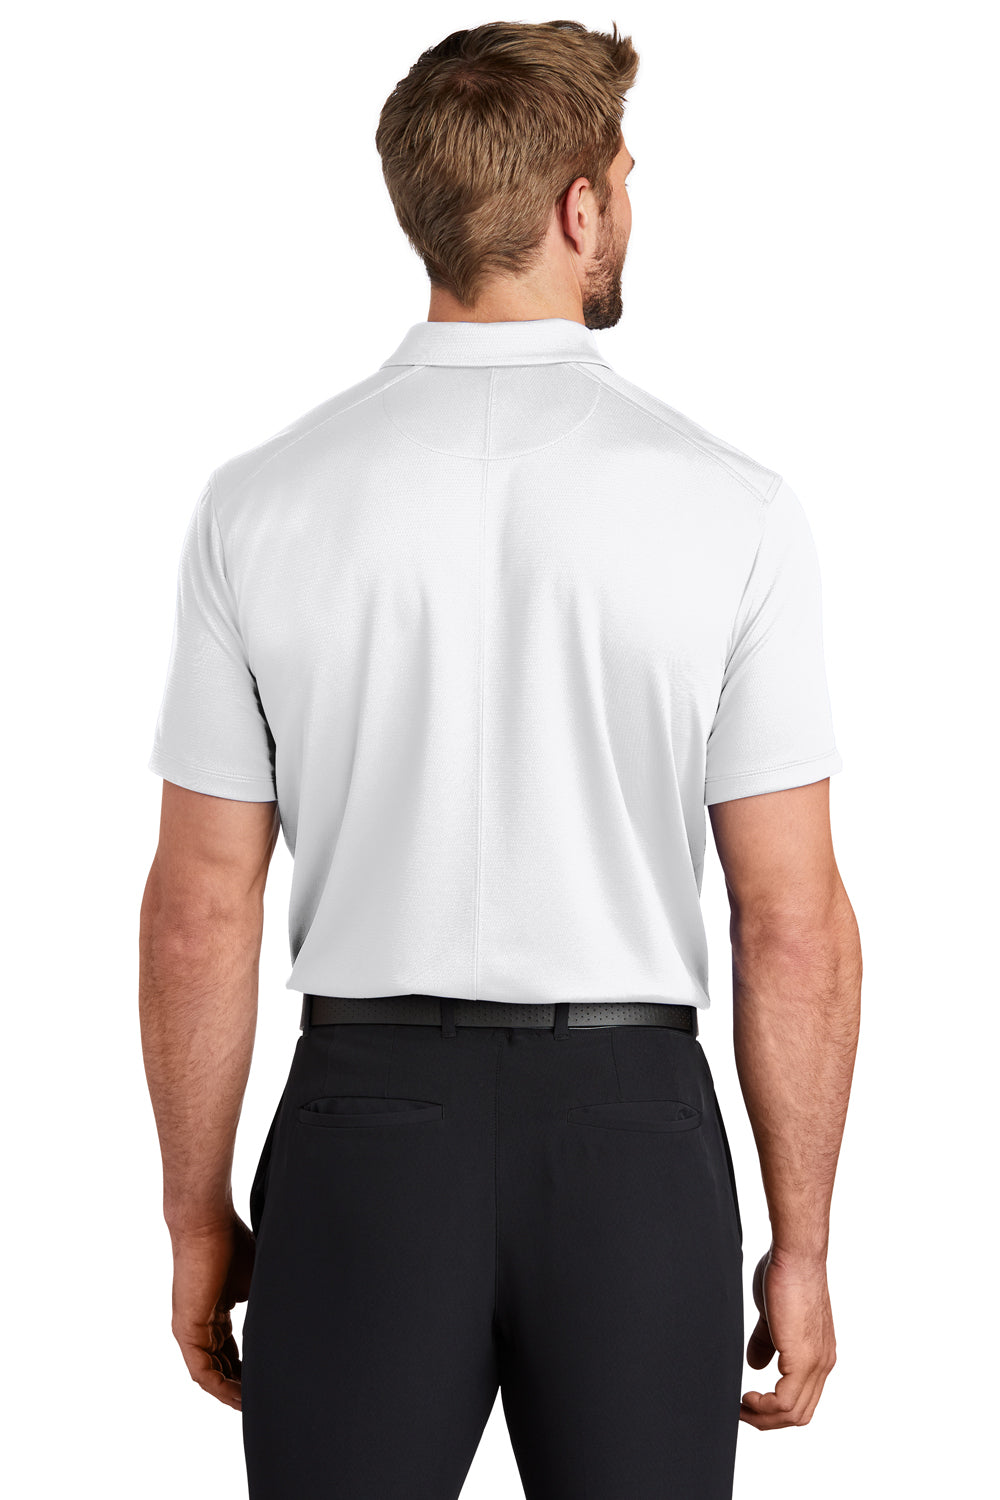 Nike NKBV6042 Mens Essential Dri-Fit Moisture Wicking Short Sleeve Polo Shirt White Model Back